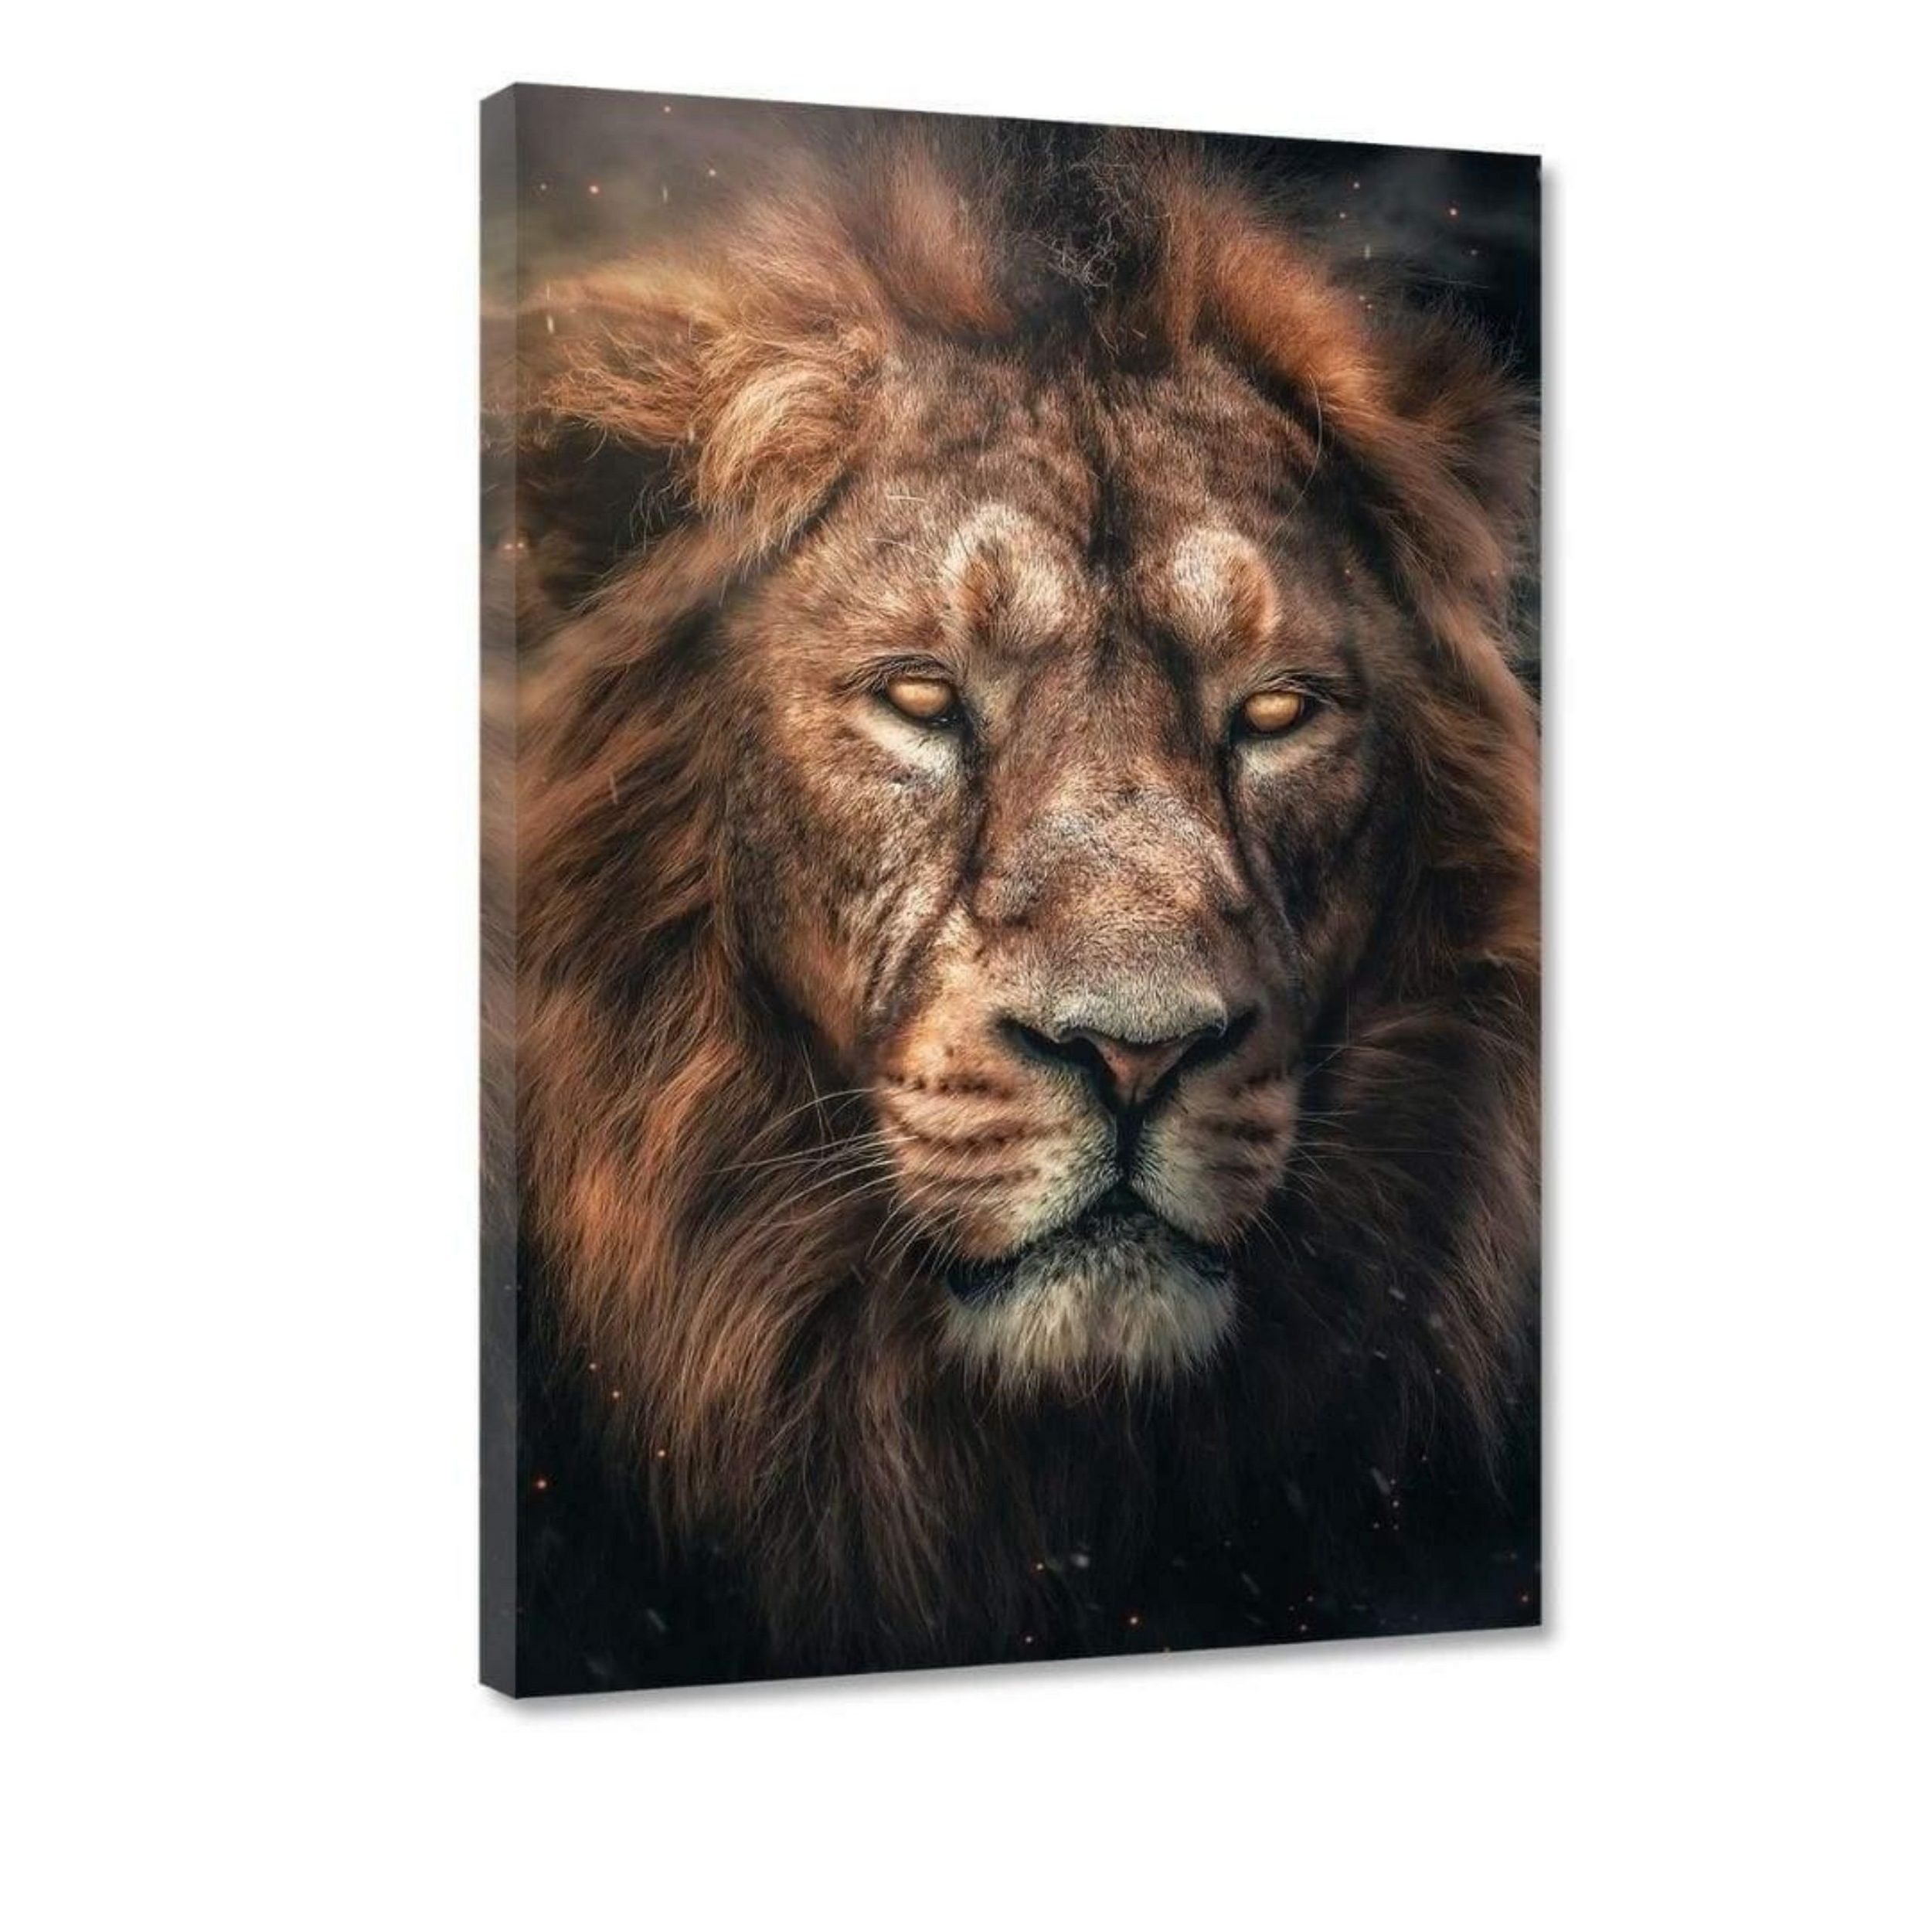 7 "Dark verfügbar Größen - Hustling Löwen-Bild als Leinwandbild in Lion" XXL unterschiedlichen Leinwandbild exklusives Tierbild, Sharks